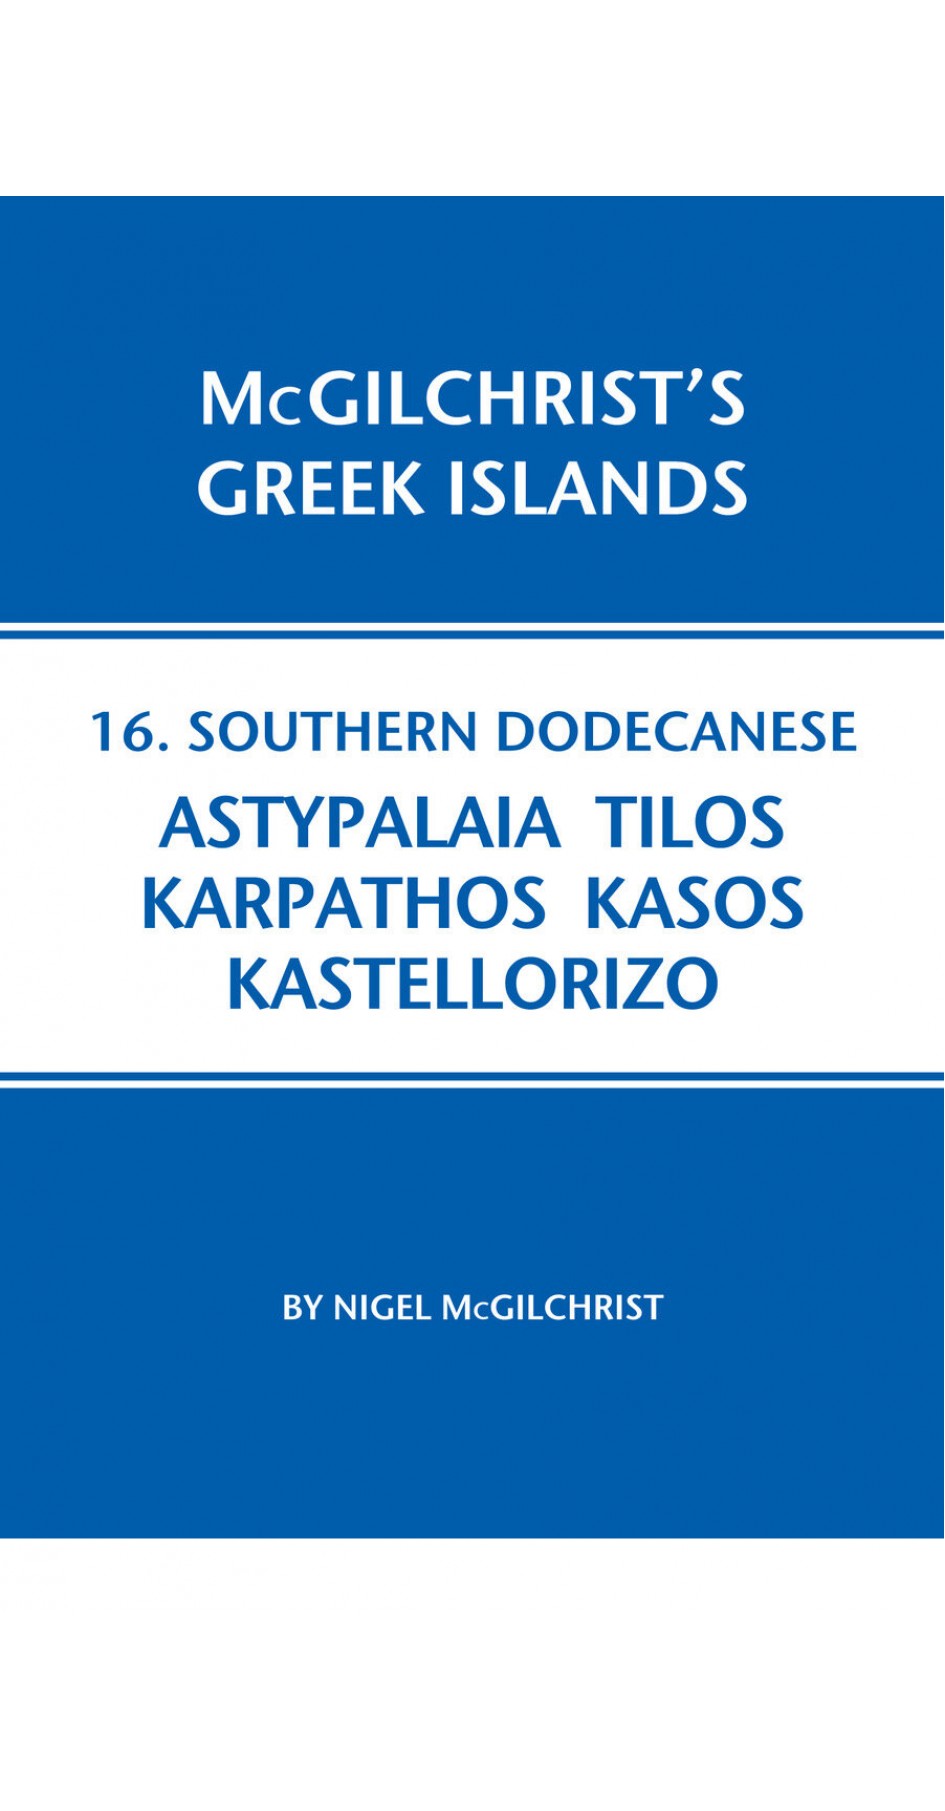 16. Southern Dodecanese: Astypalaia, Tilos, Karpathos, Kasos, Kastellorizo - McGilchrist’s Greek Islands